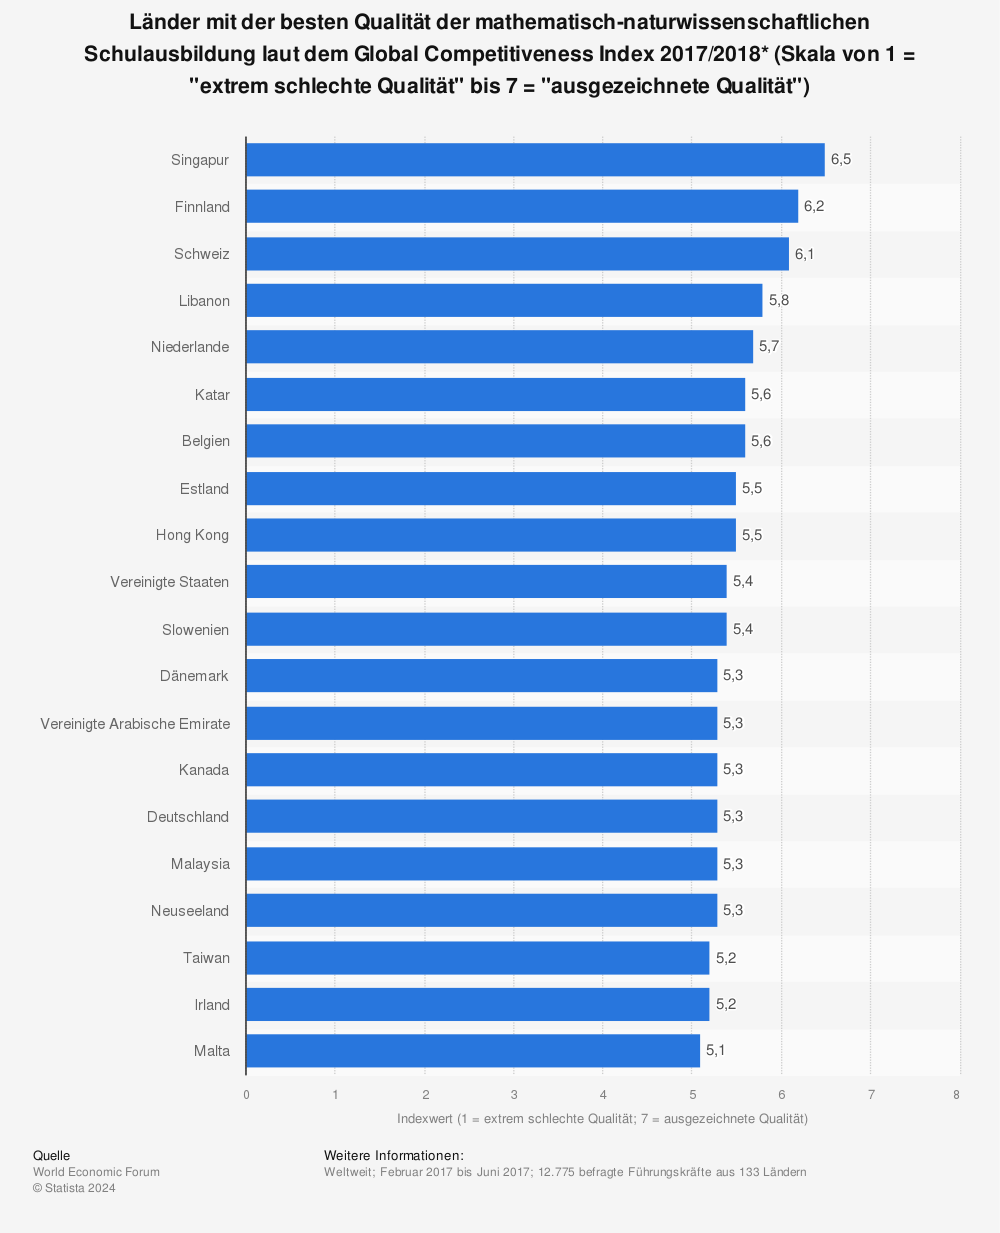 Statistik: Länder mit der besten Qualität der mathematisch-naturwissenschaftlichen Schulausbildung laut dem Global Competitiveness Index 2017/2018* (Skala von 1 = "extrem schlechte Qualität" bis 7 = "ausgezeichnete Qualität") | Statista